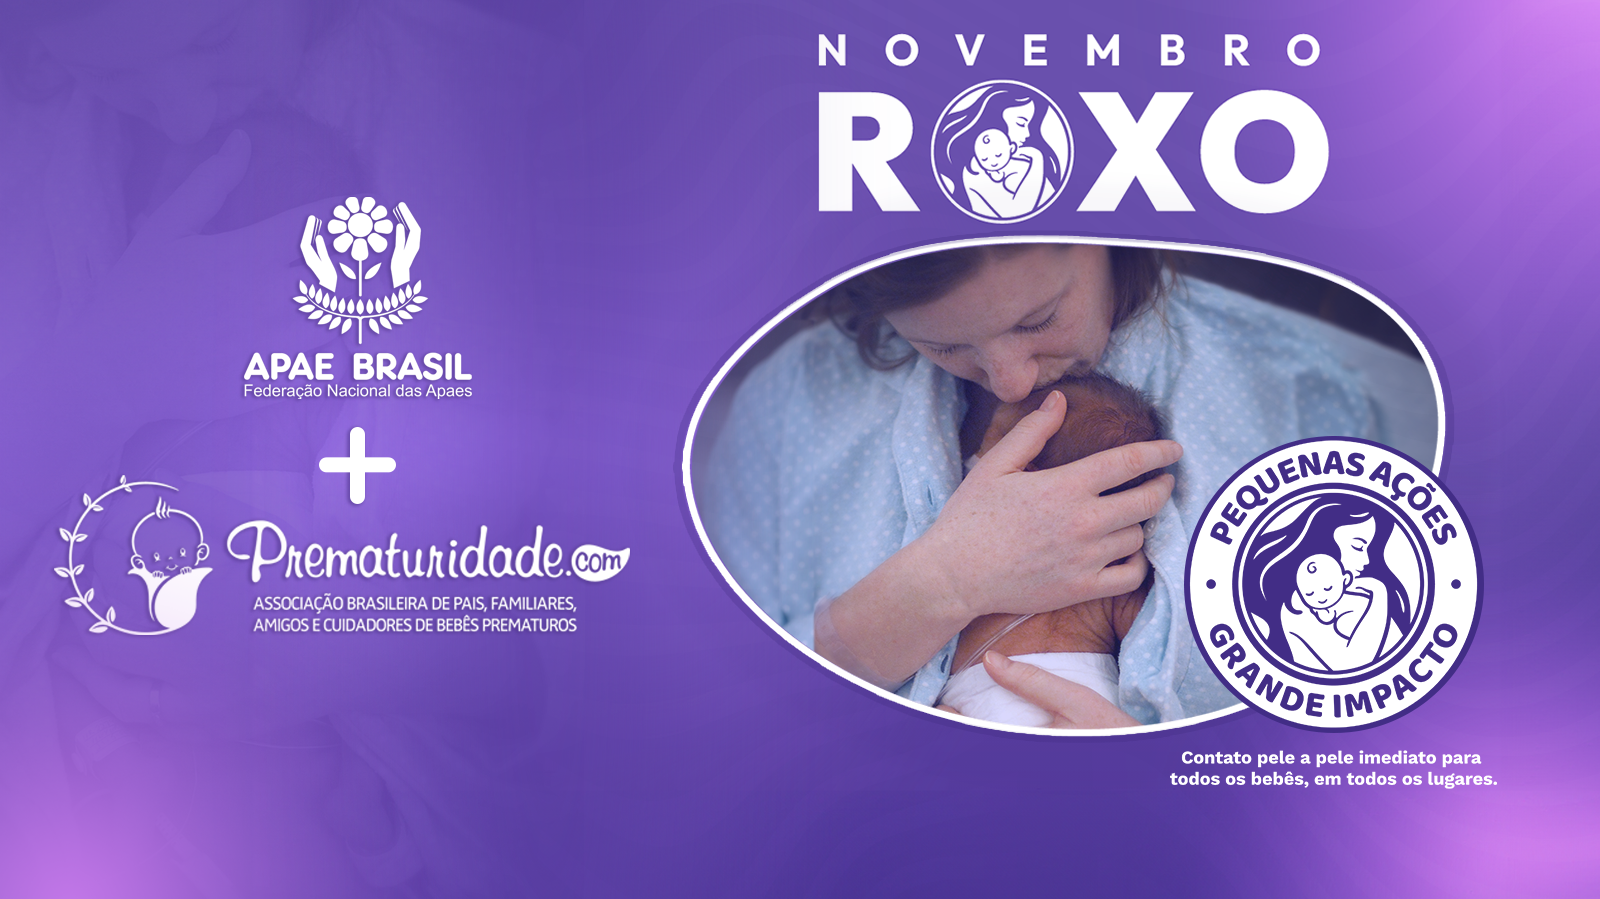 Apae Brasil apoia ações que visam sensibilizar a sociedade sobre a prematuridade